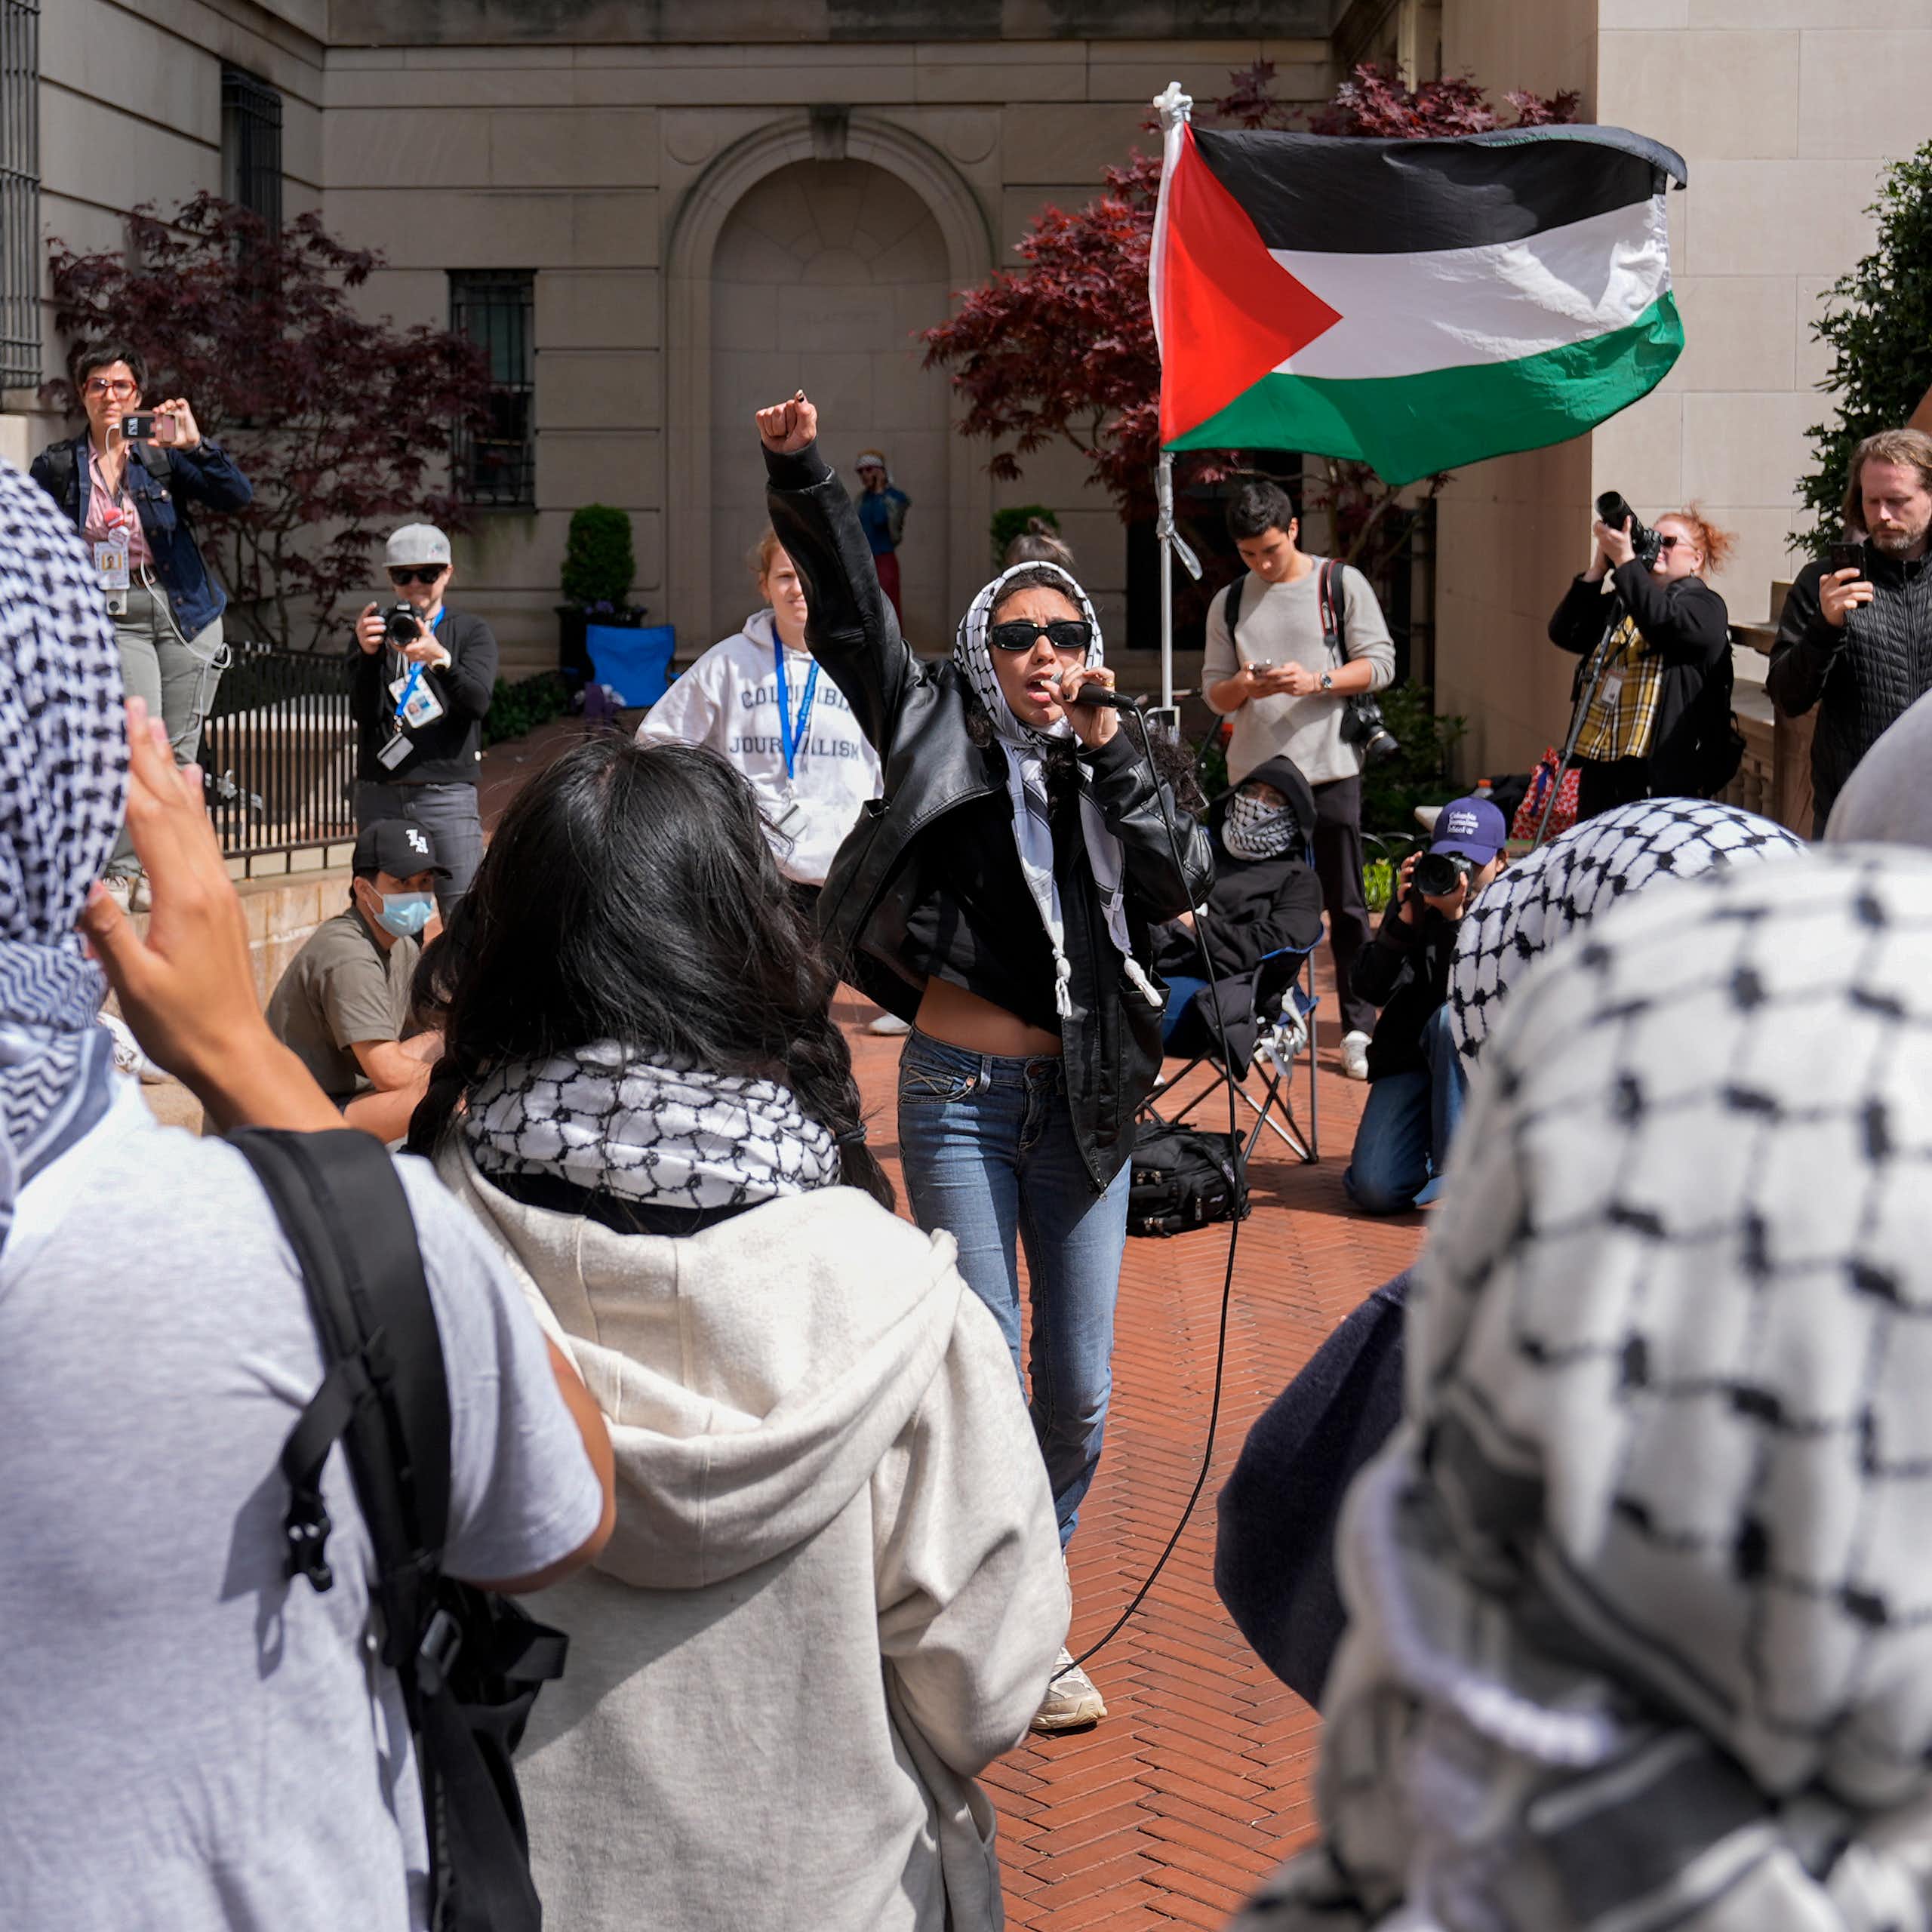 Mujer con gafas de sol ondea una bandera palestina roja, verde, blanca y negra rodeada de gente con keffiyah.